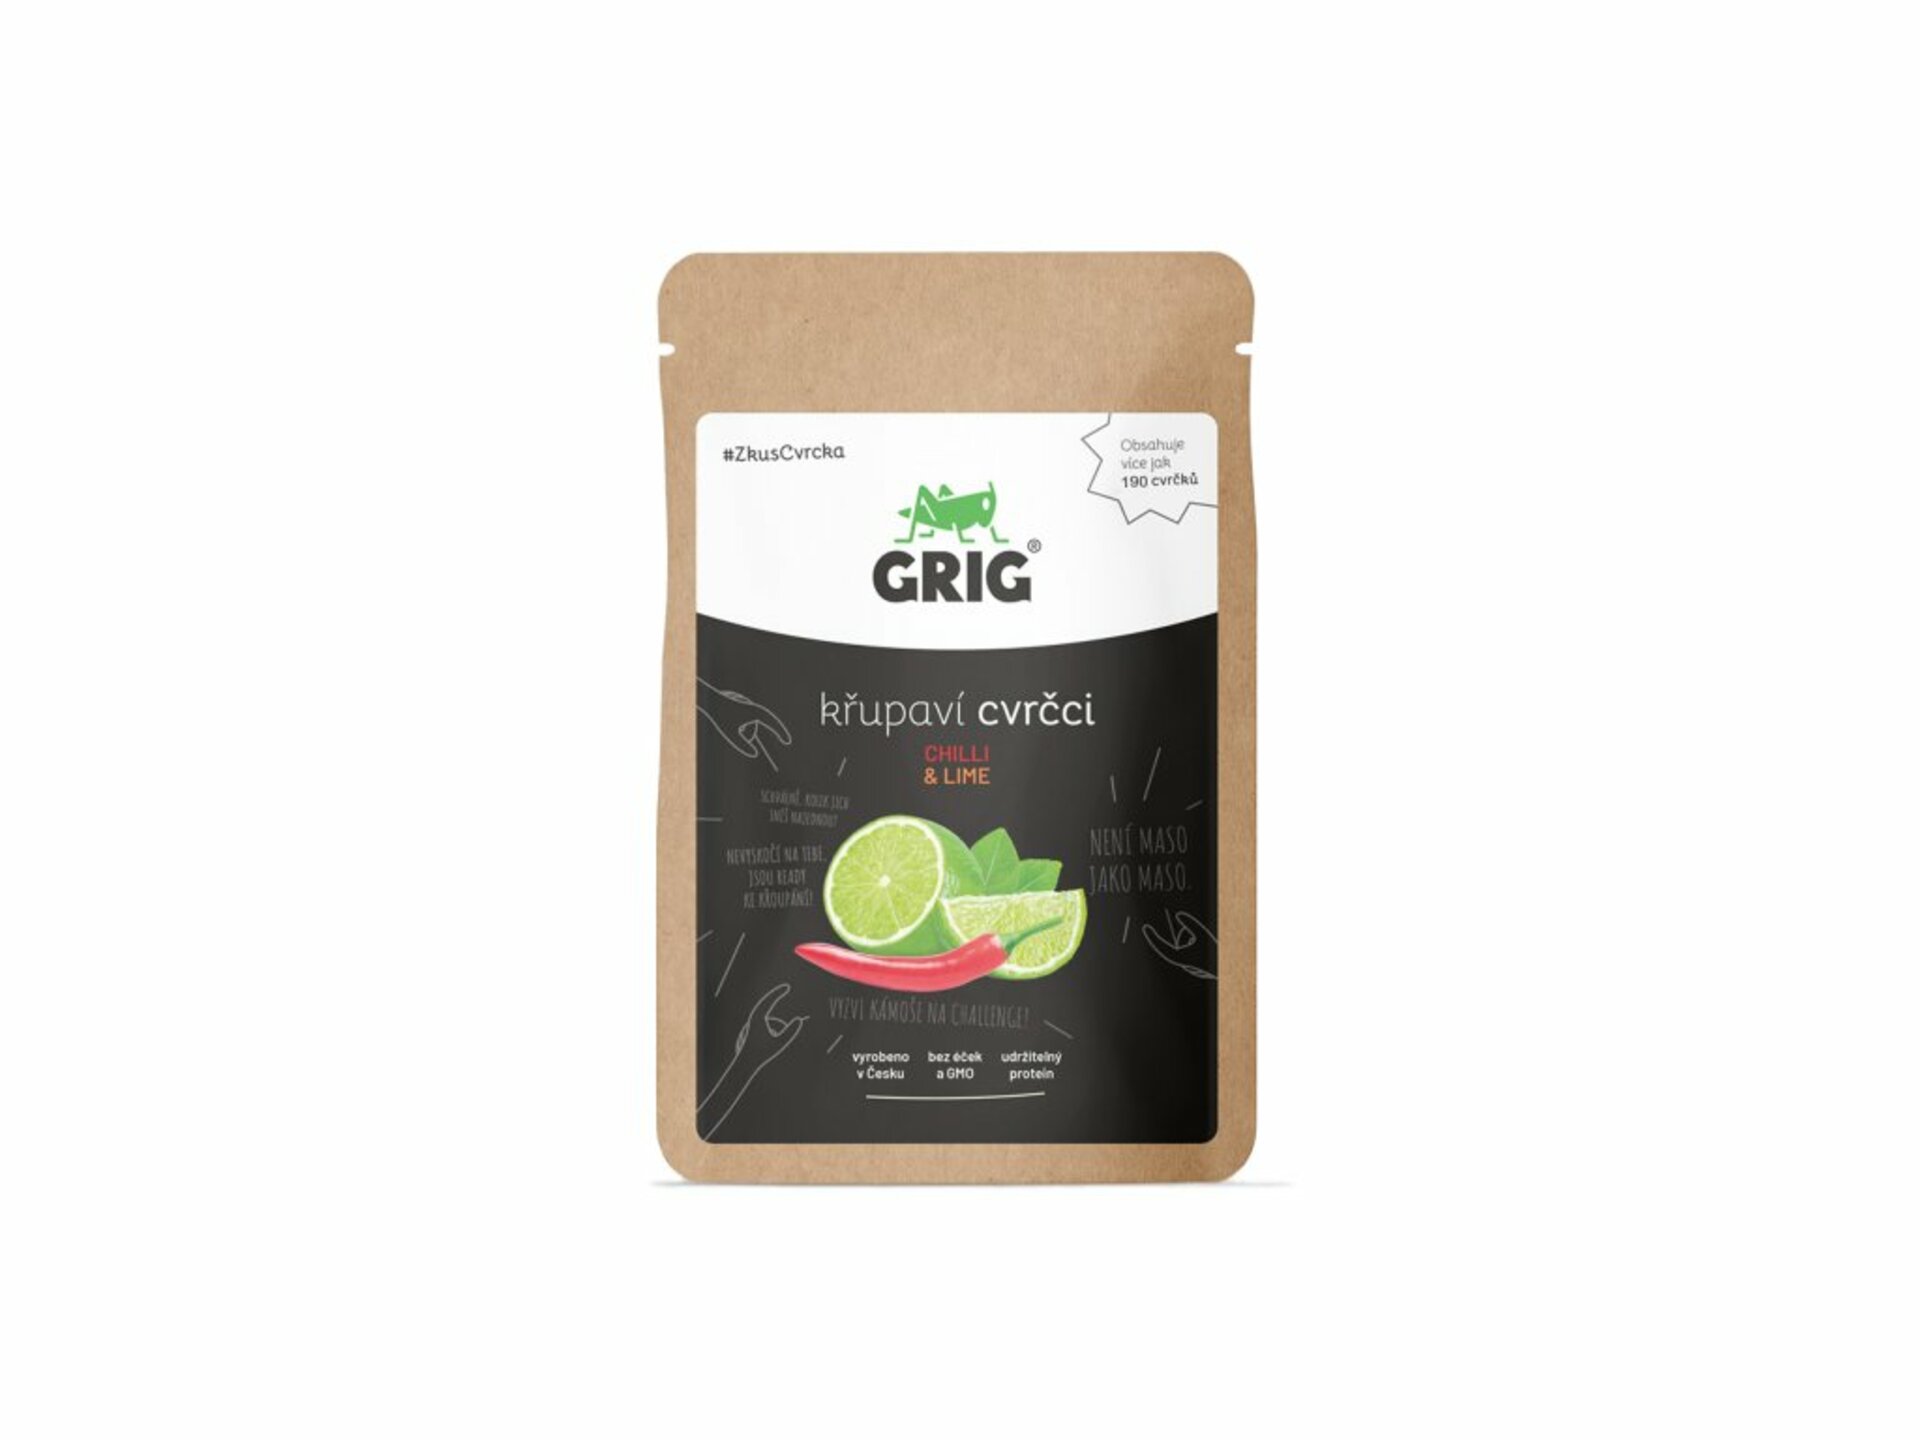 Grig Sušení cvrčci Chilli & Lime 20 g